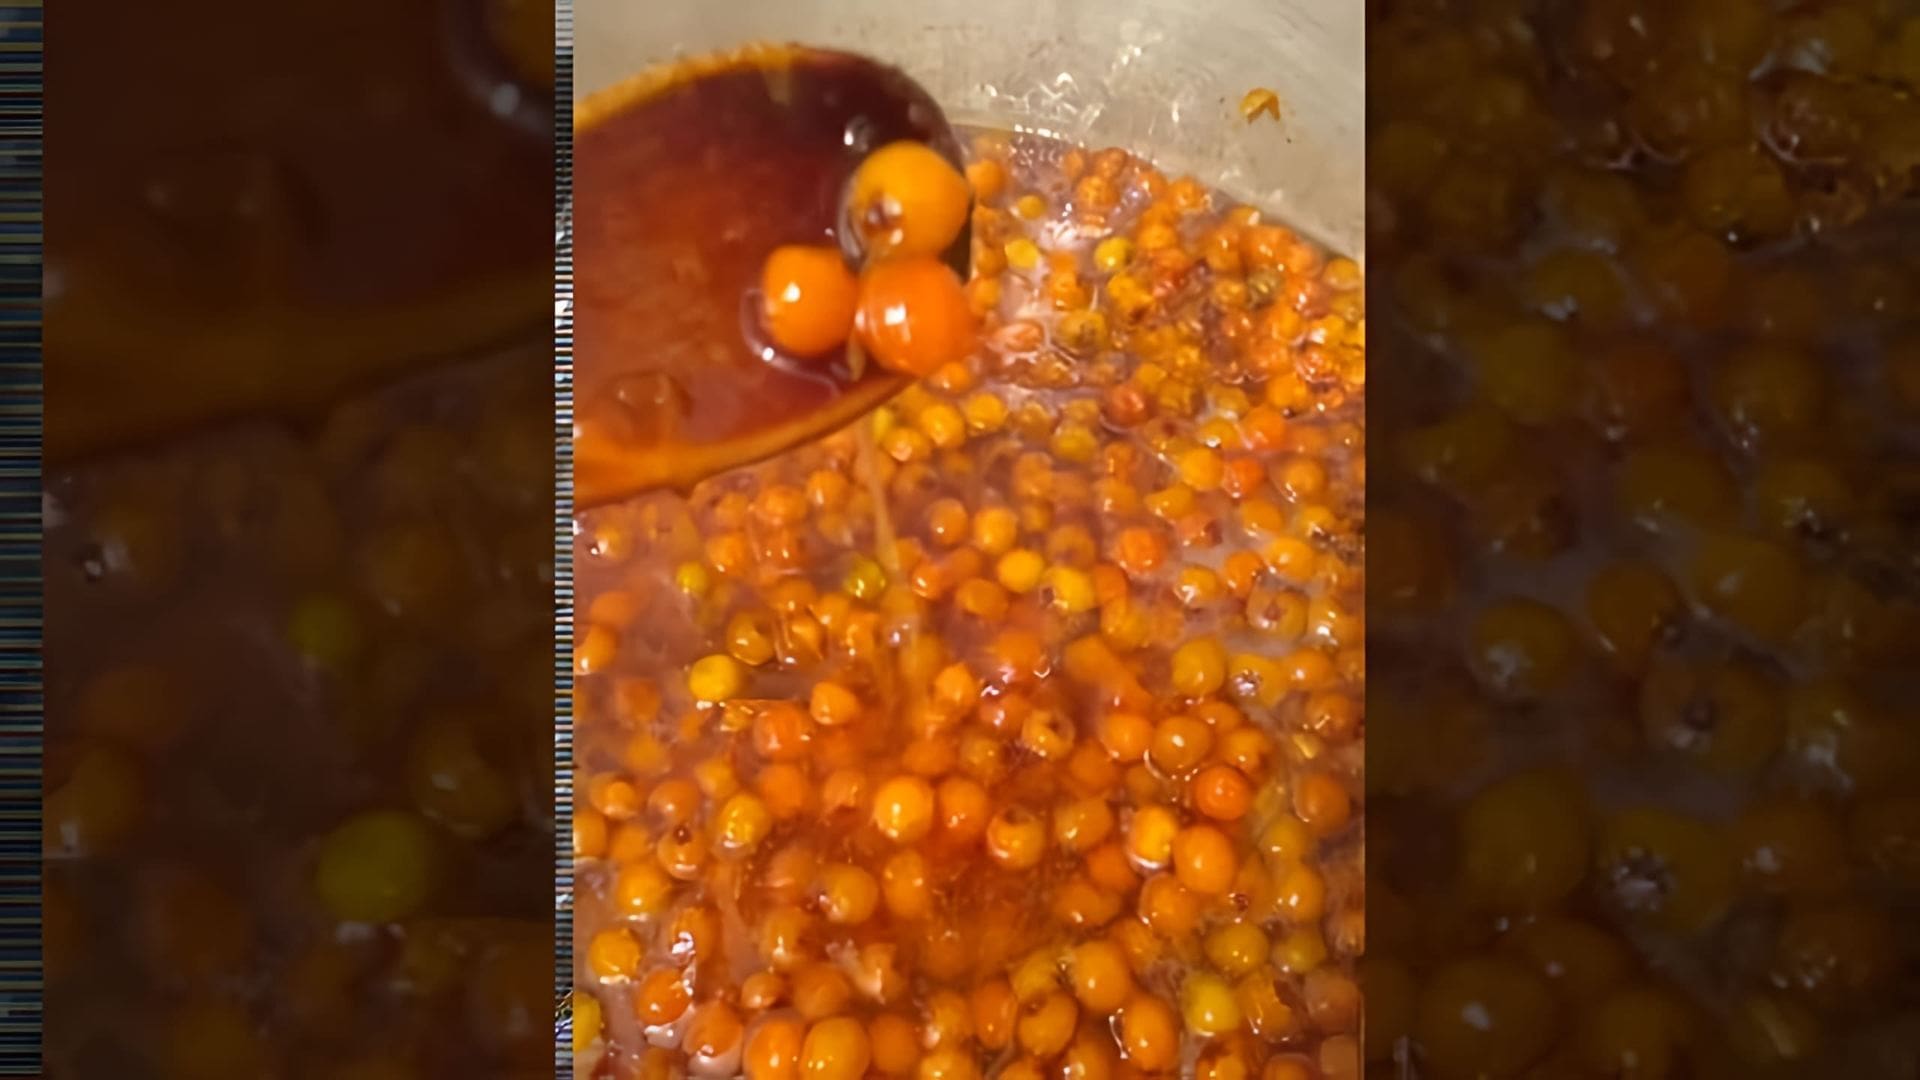 В данном видео демонстрируется процесс приготовления варенья из боярышника